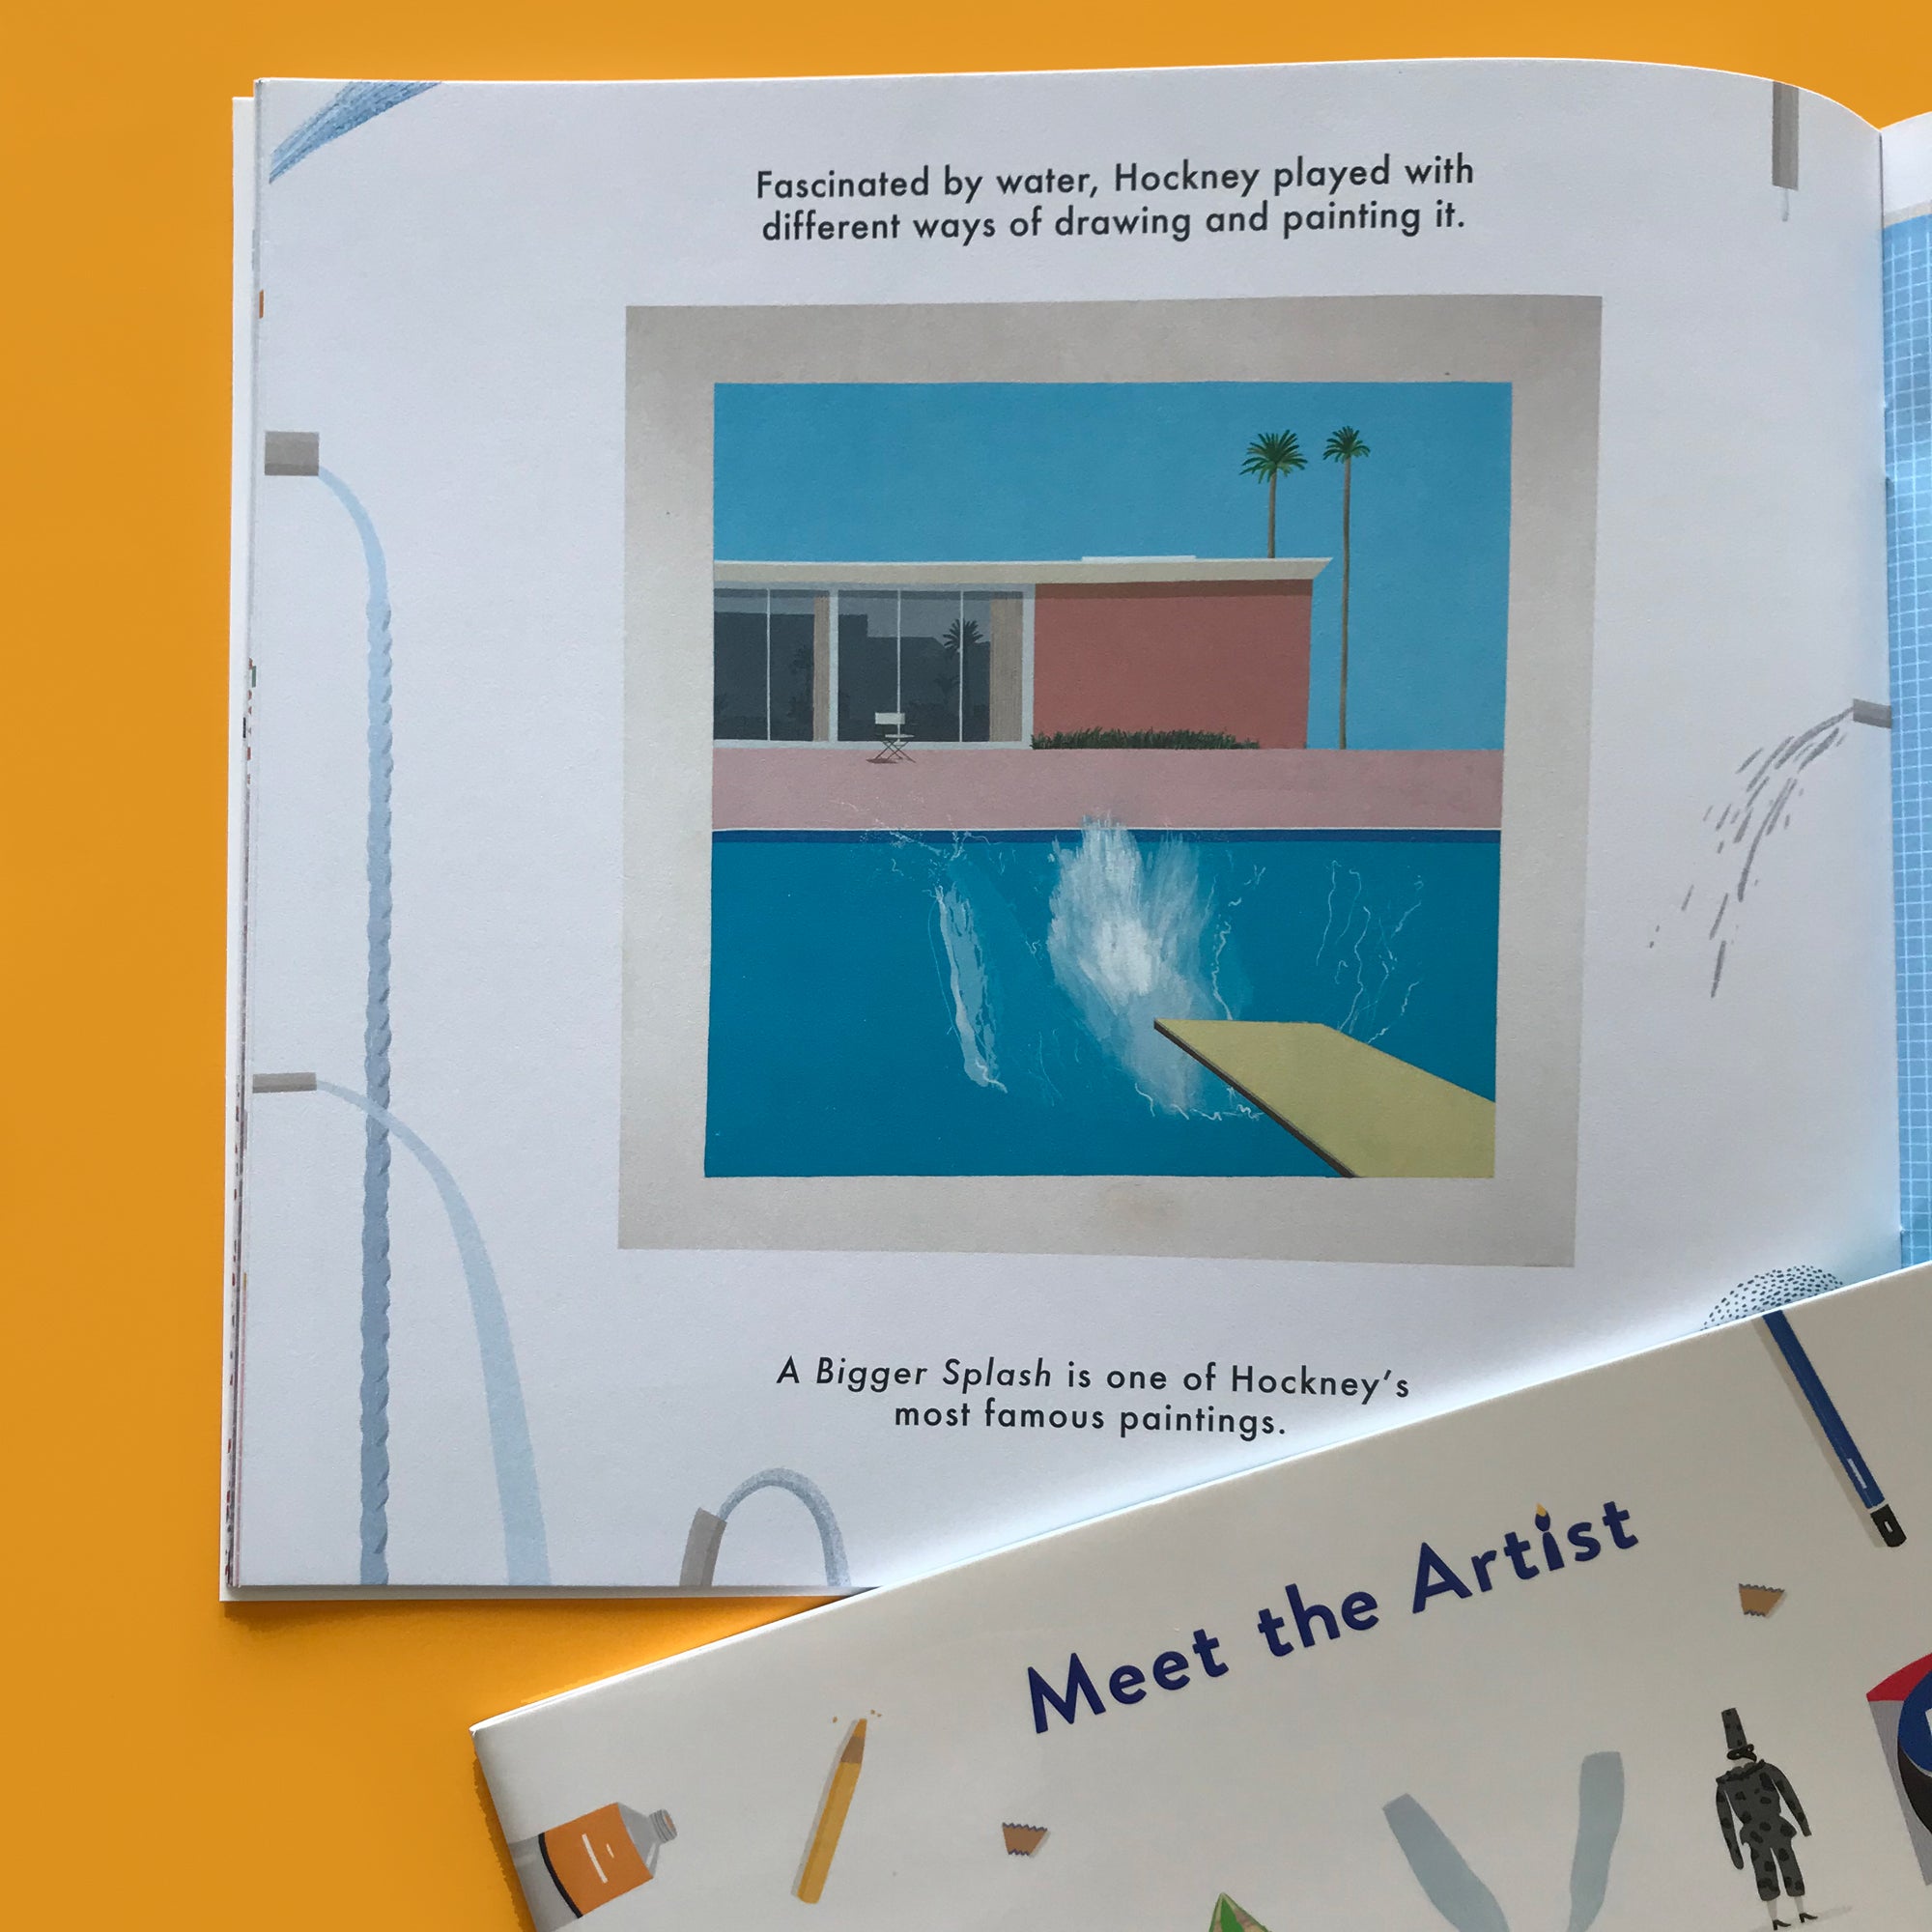 Meet the Artist: David Hockney activity book